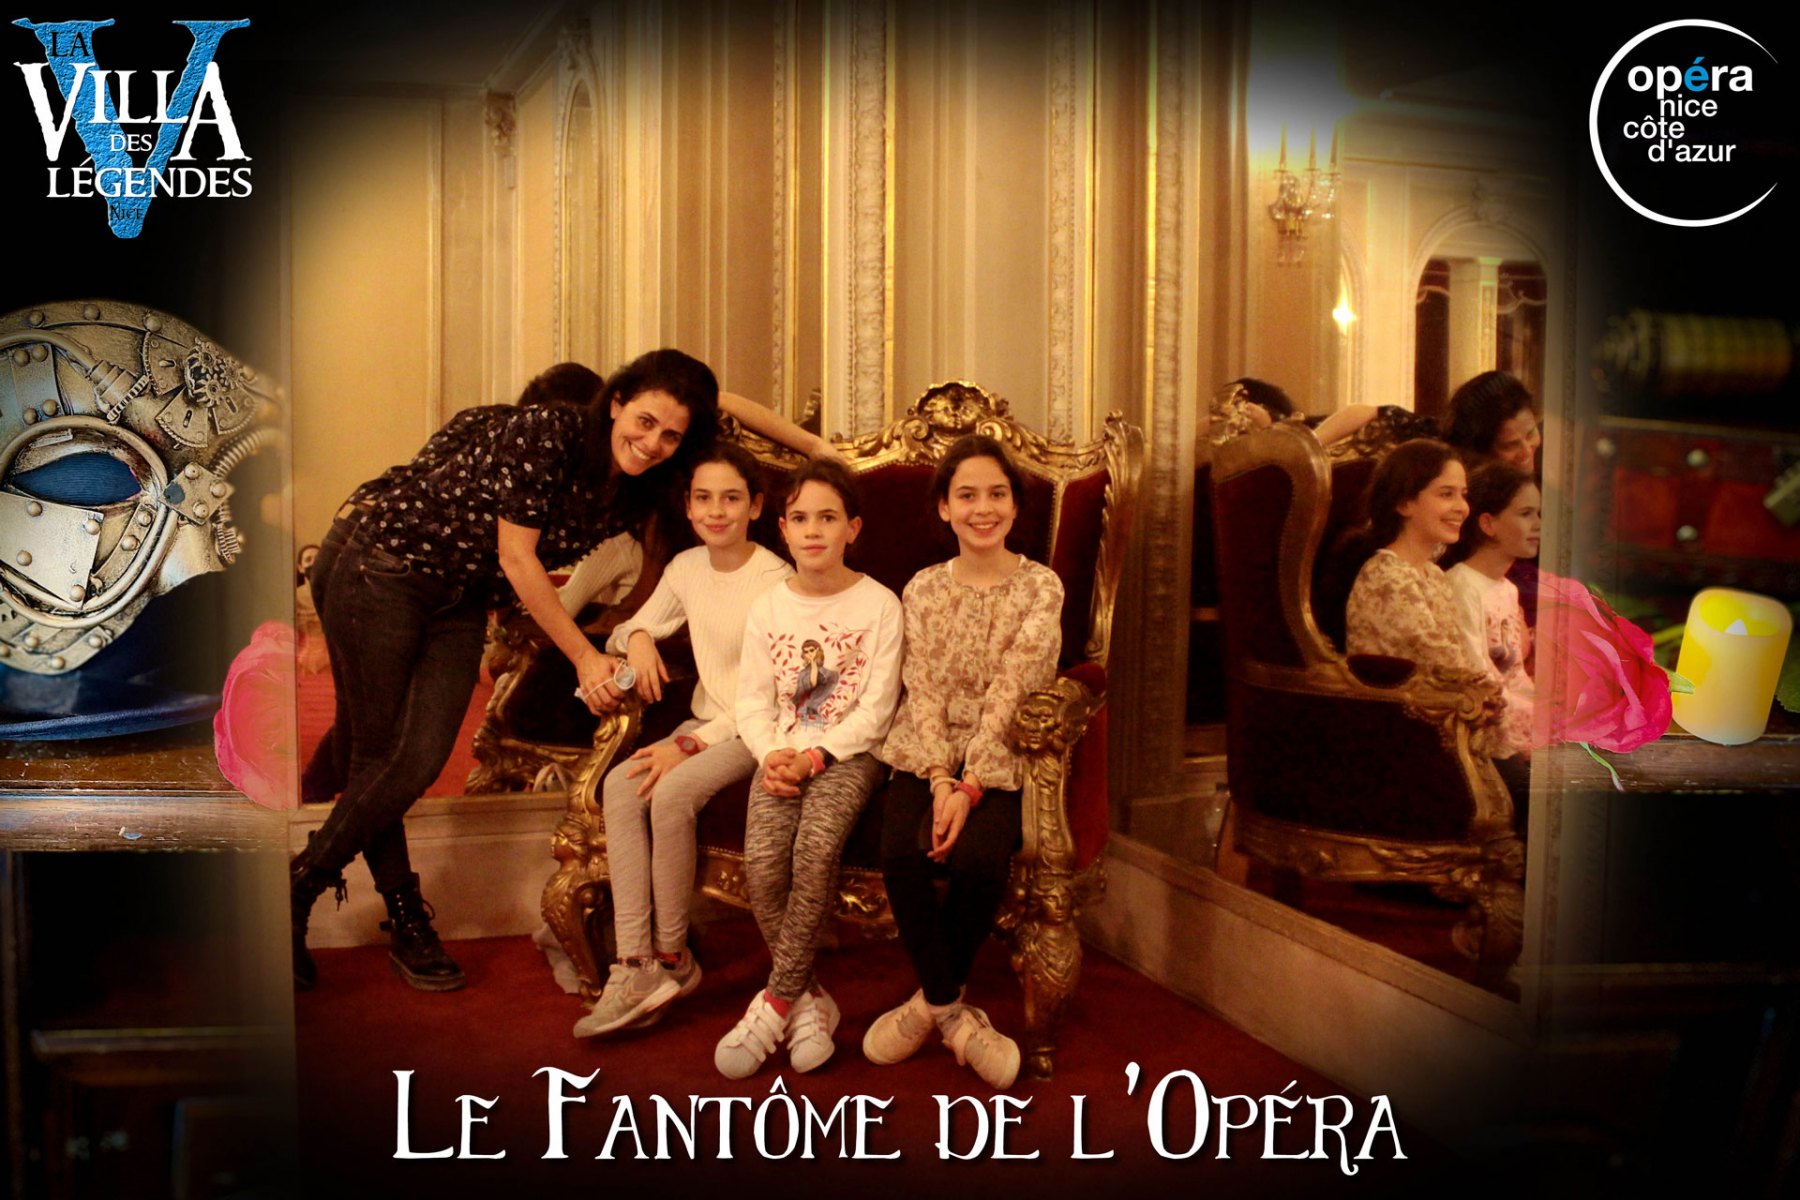 Le_Fantome_de_lOpera-Photos_Joueurs-17_nov_2021-La_Villa_des_Legendes-Opera_de_Nice-groupe_03